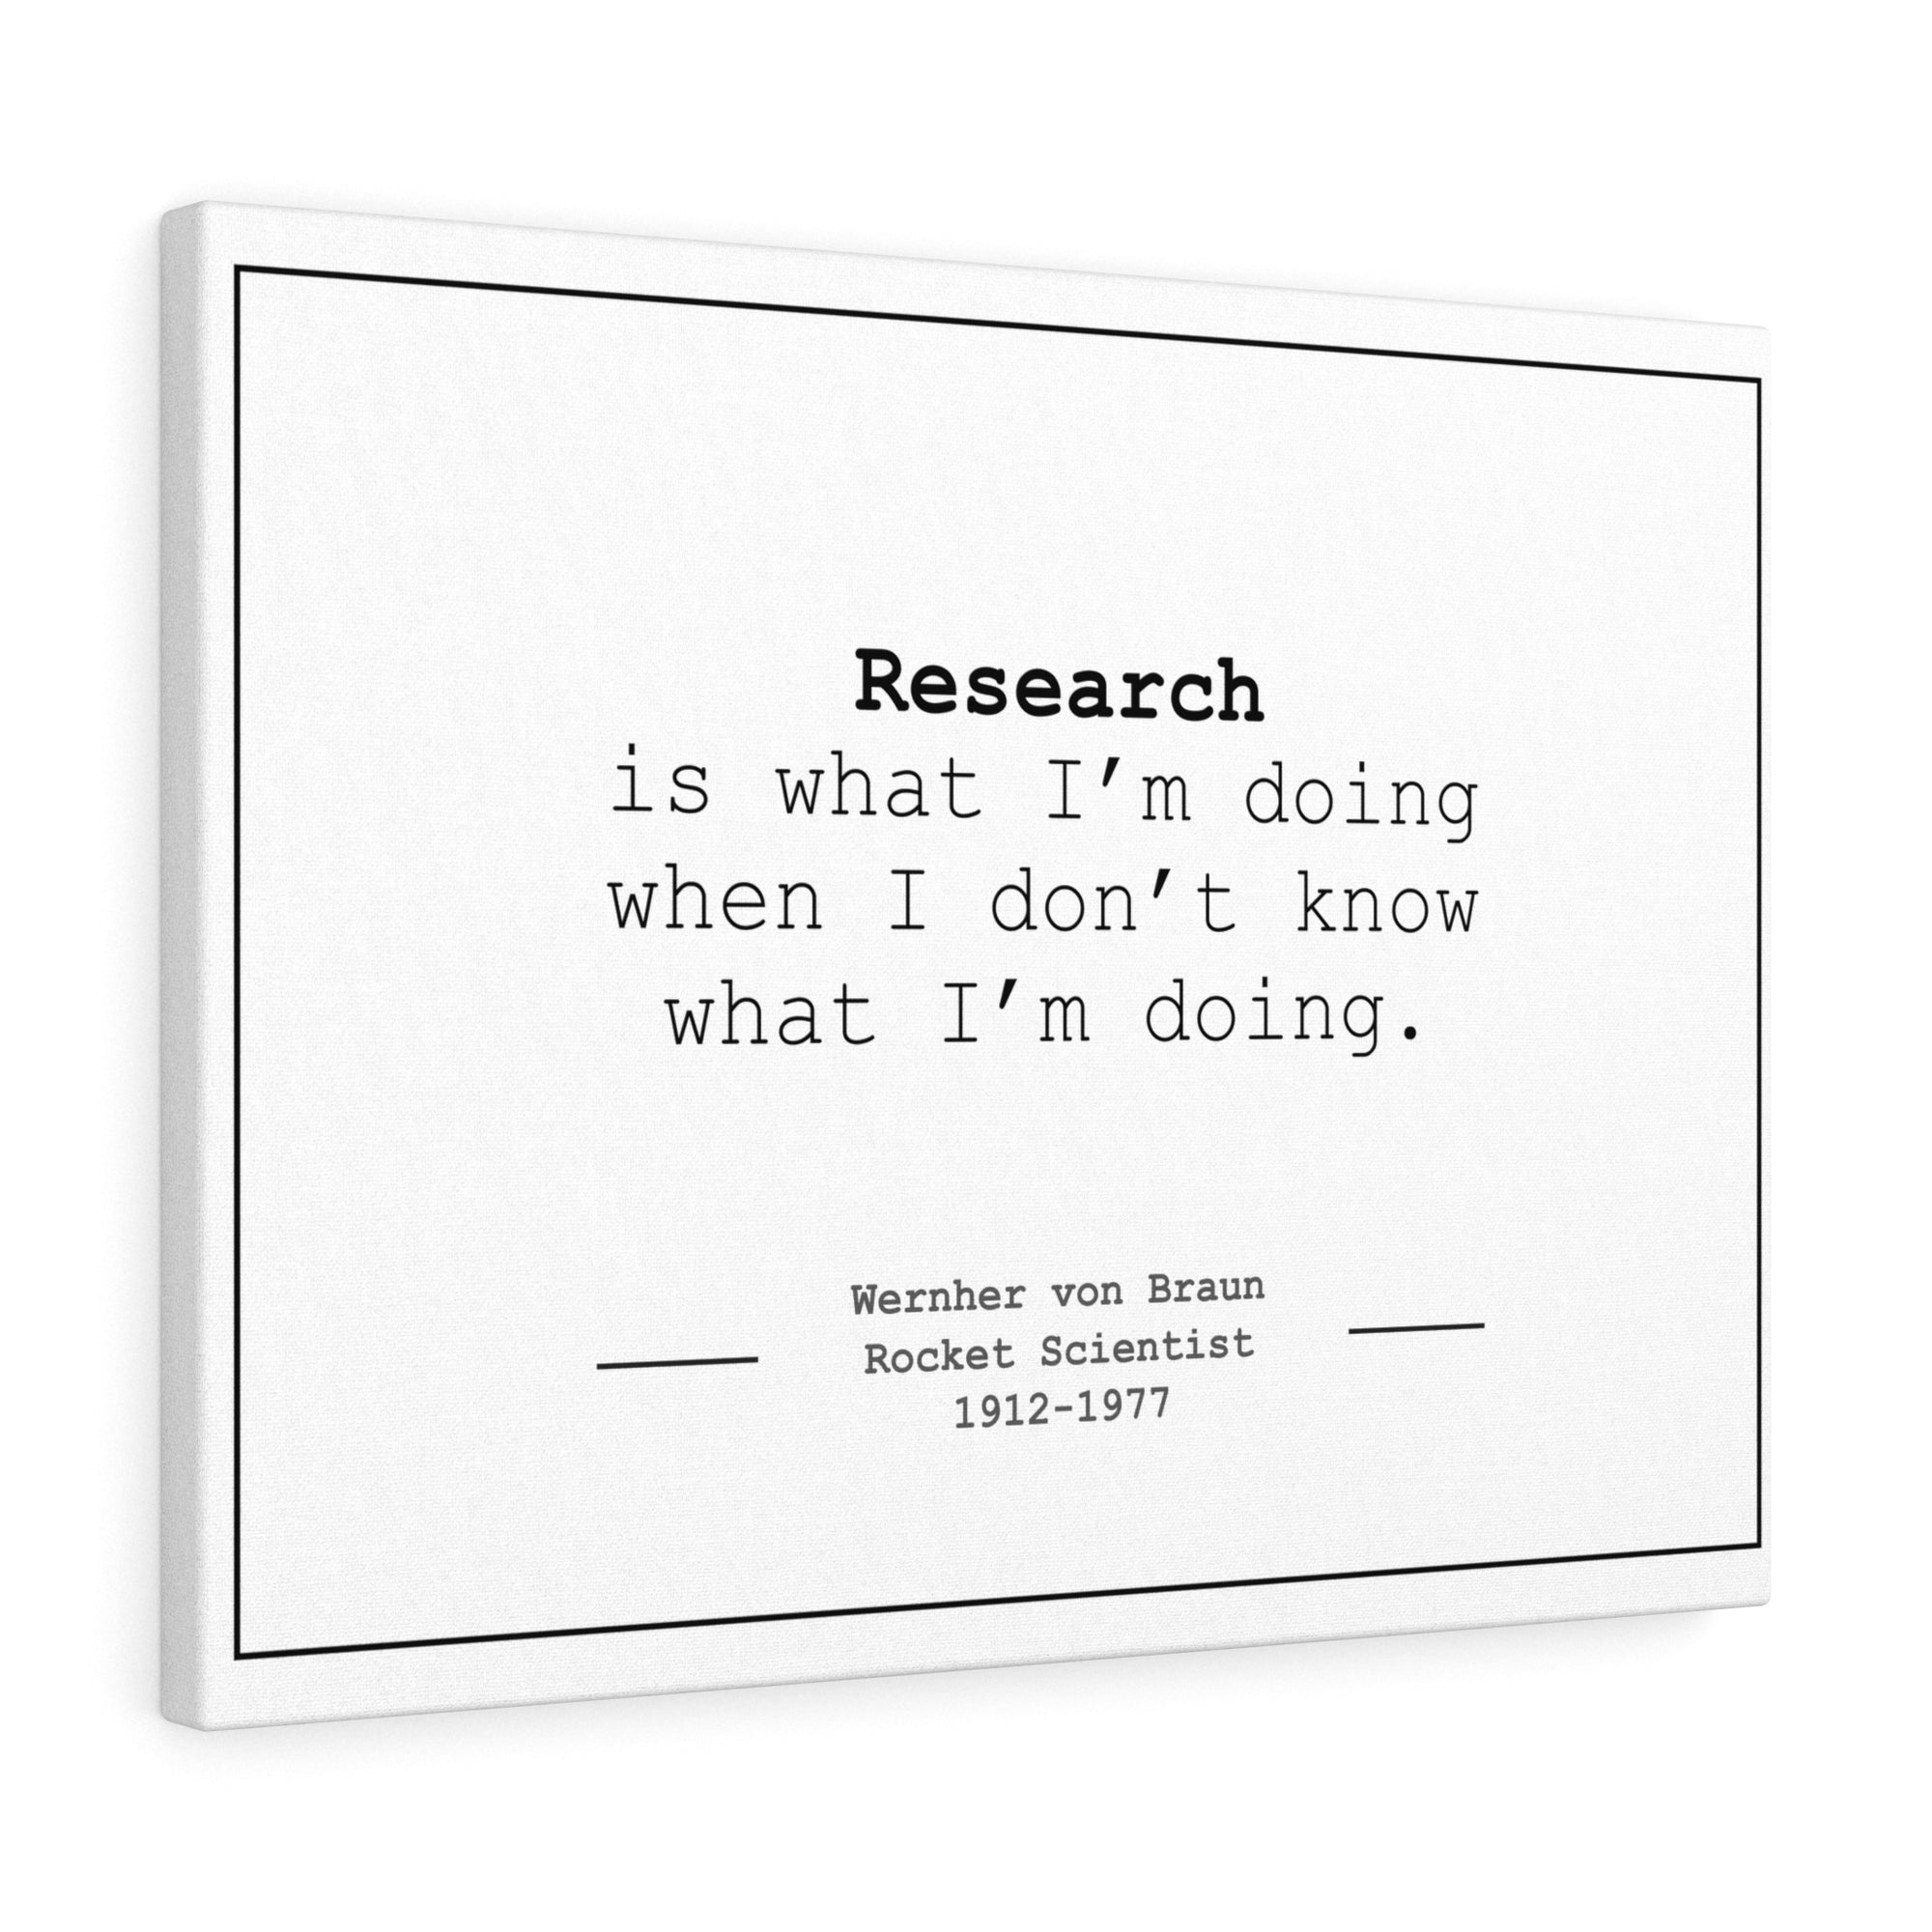 Wernher von Braun "Research" - Canvas Wrap (5" x 7")